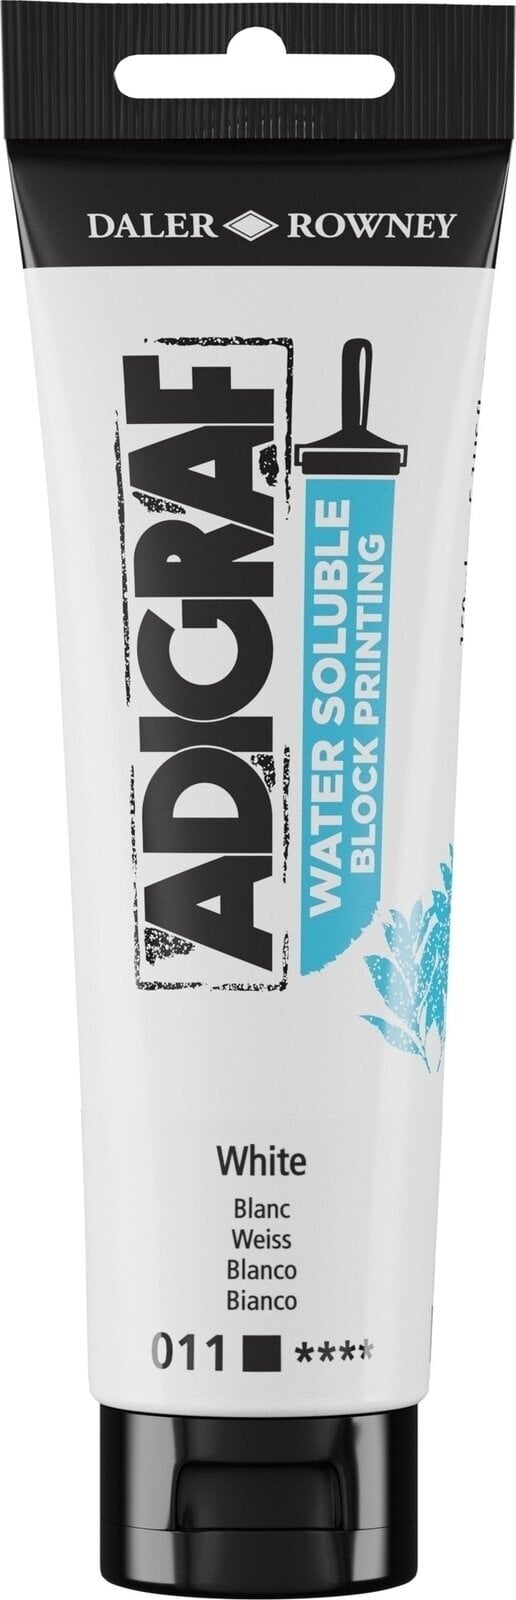 Verf voor linosnede Daler Rowney Adigraf Block Printing Water Soluble Colour Verf voor linosnede White 150 ml